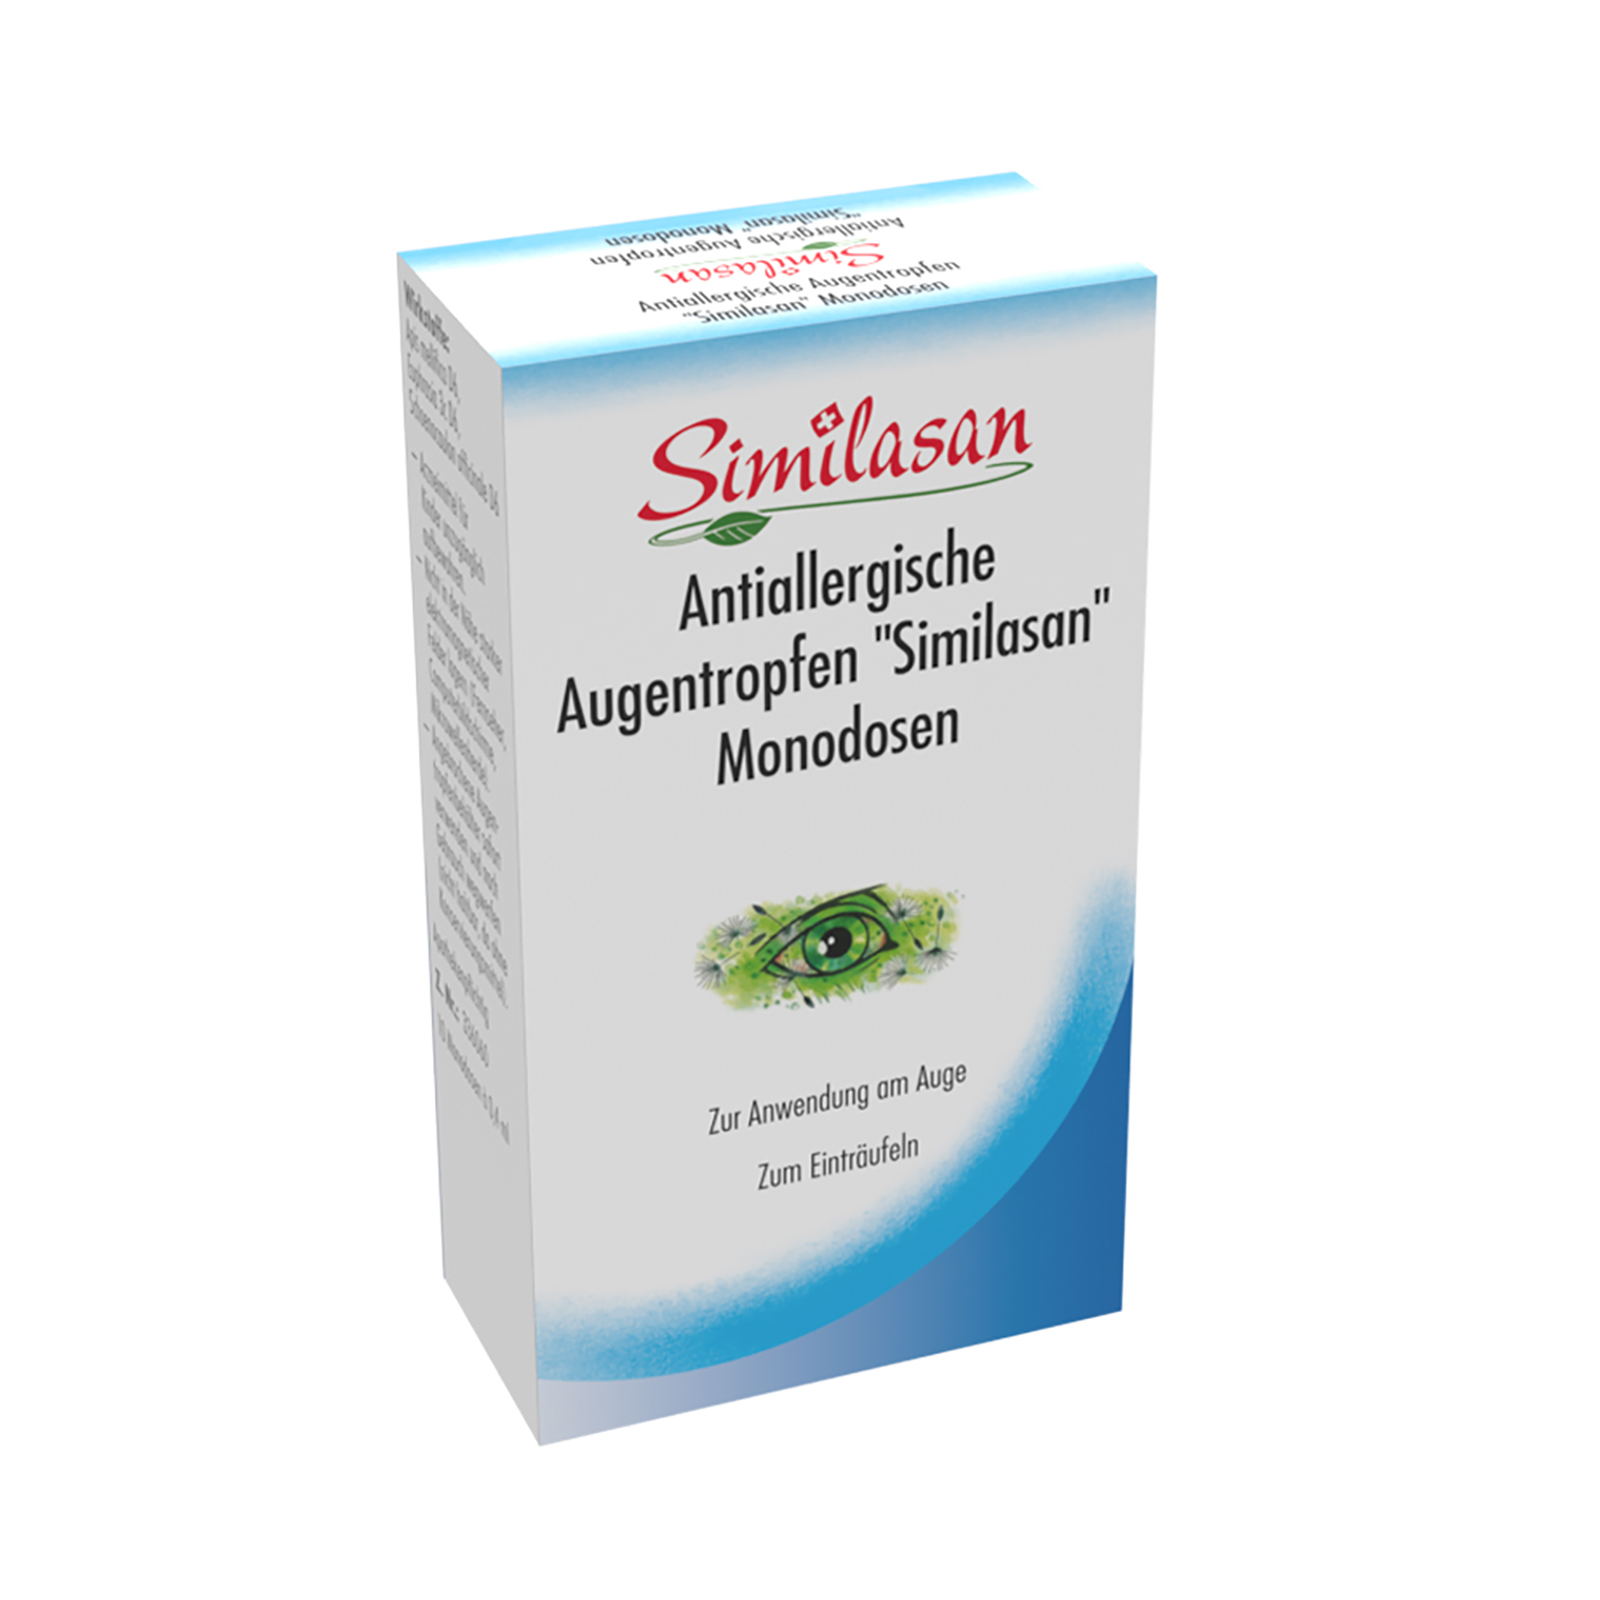 Antiallergische Augentropfen "Similasan" - Monodosen